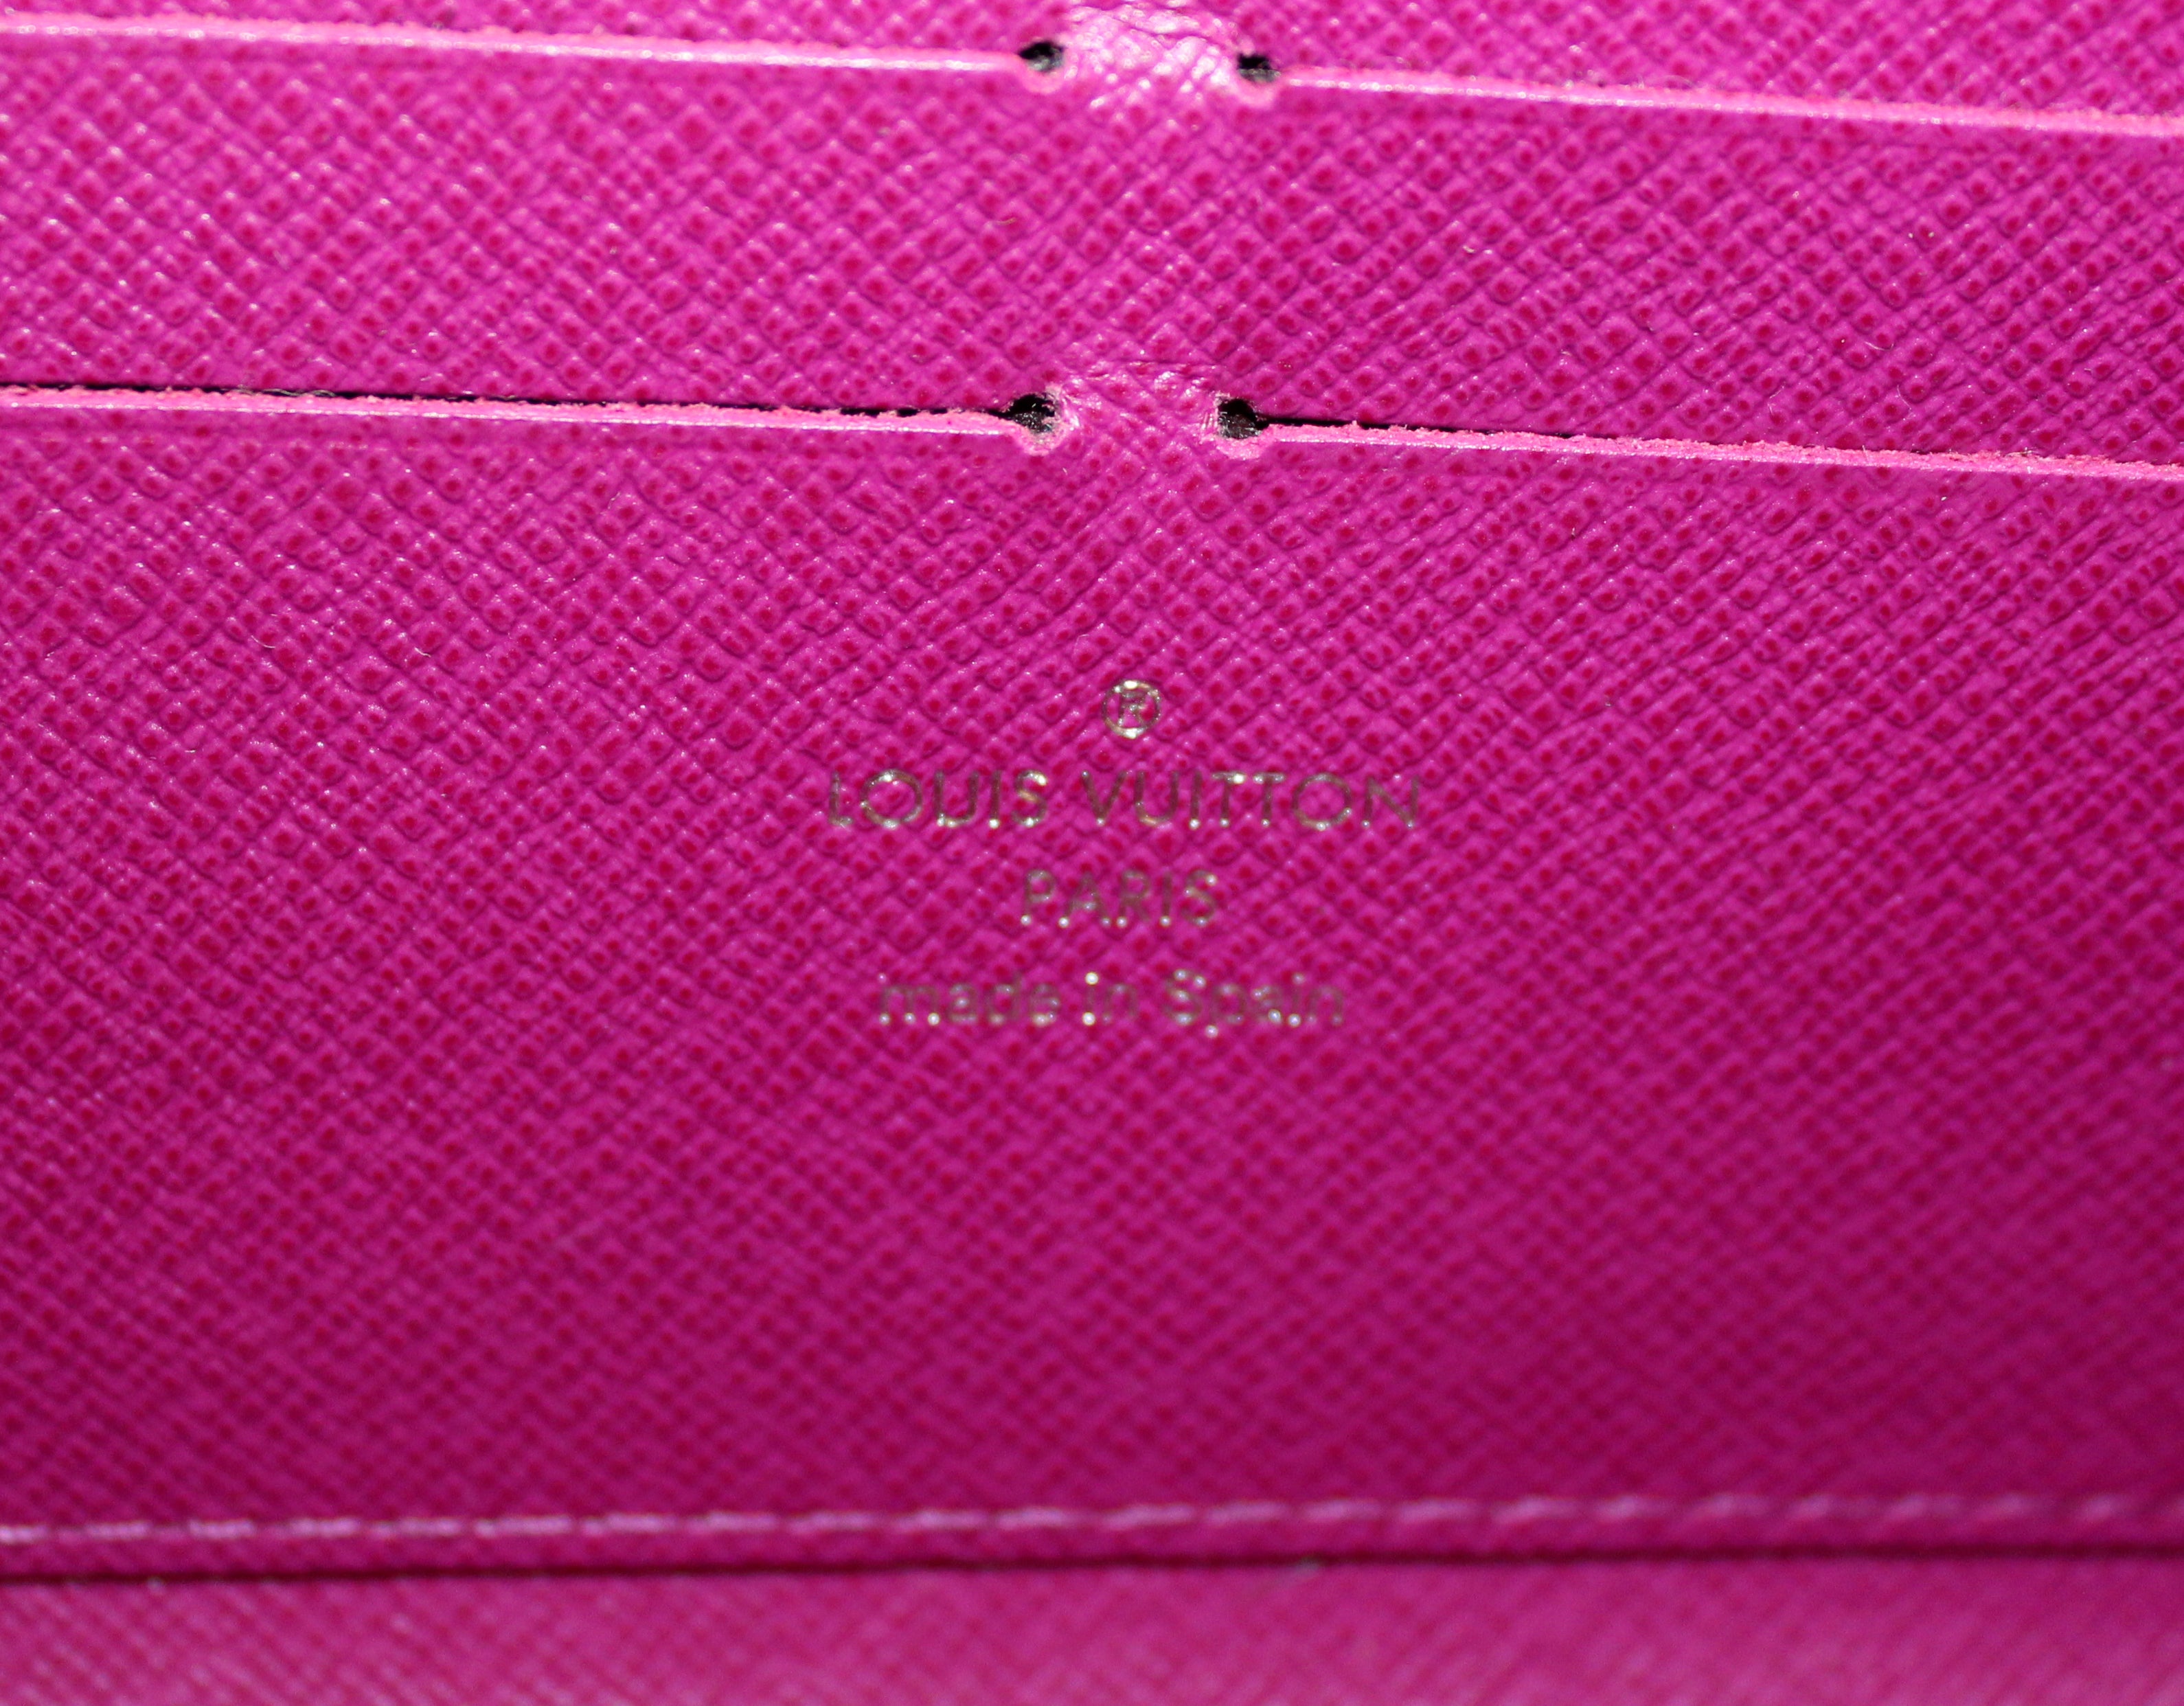 Authentic Louis Vuitton Purple Epi Leather Zippy Wallet